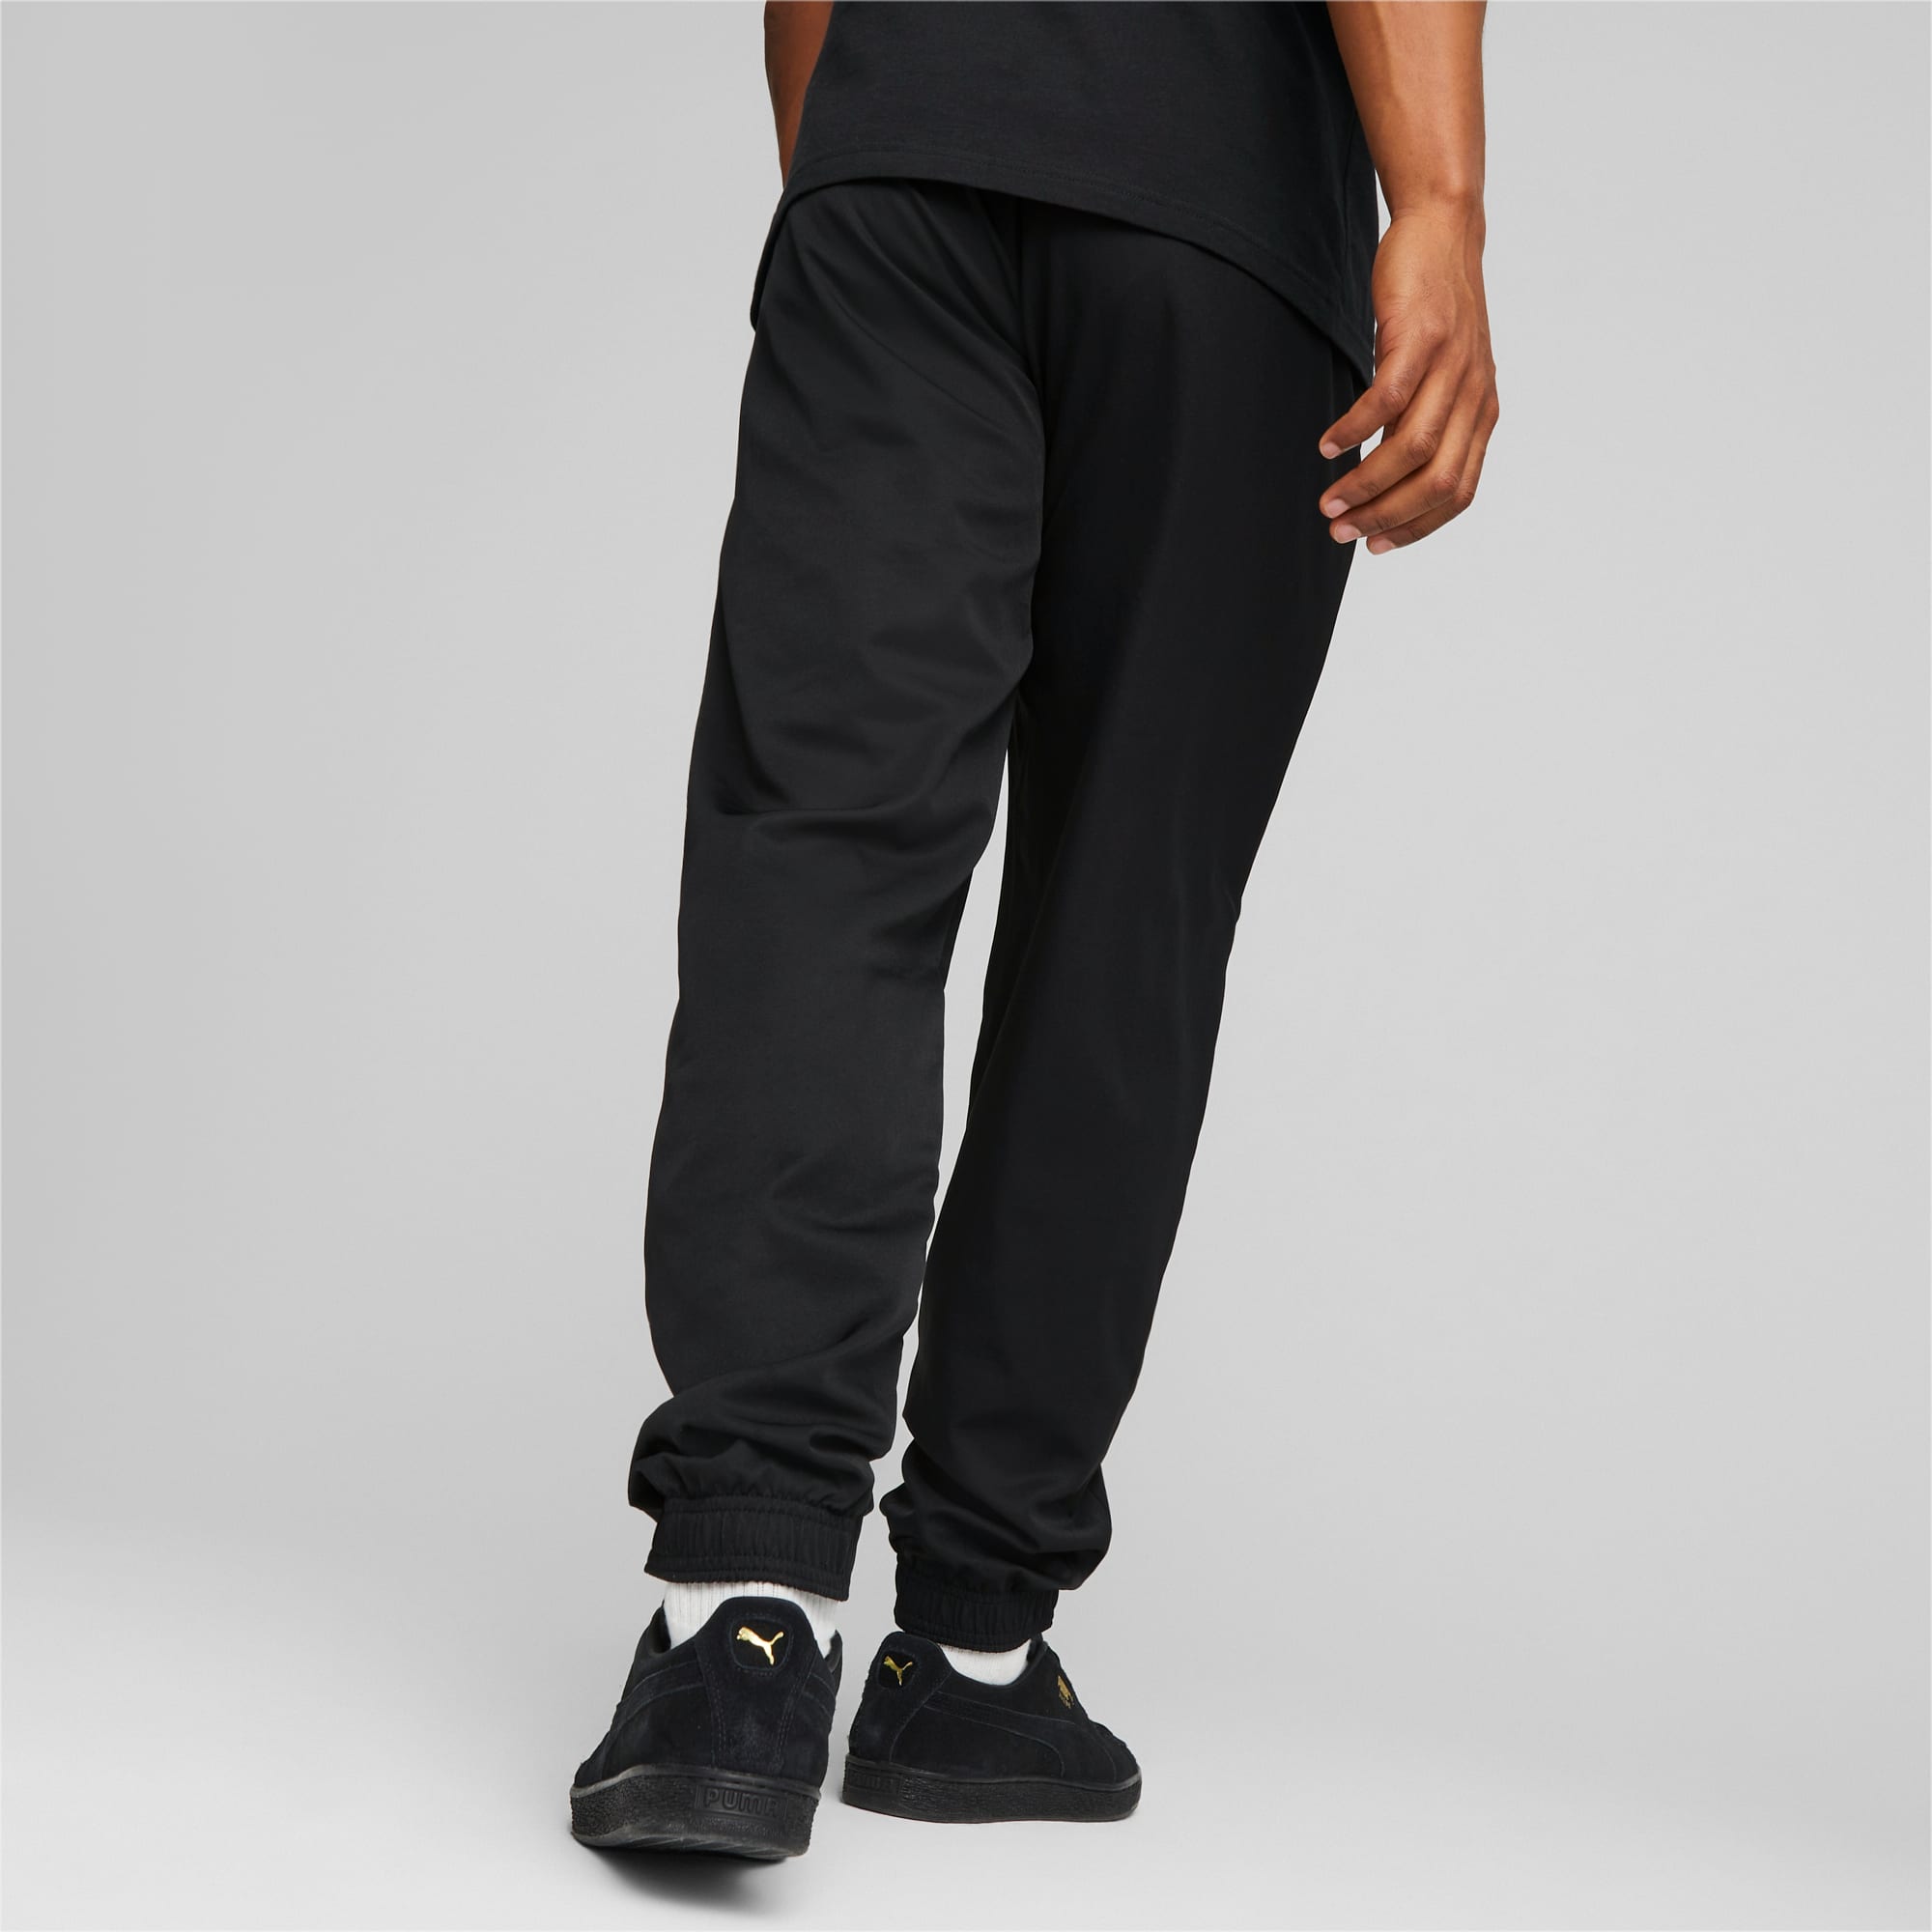 PUMA Active Woven Men's Pants, Black, Size 3XL, Clothing